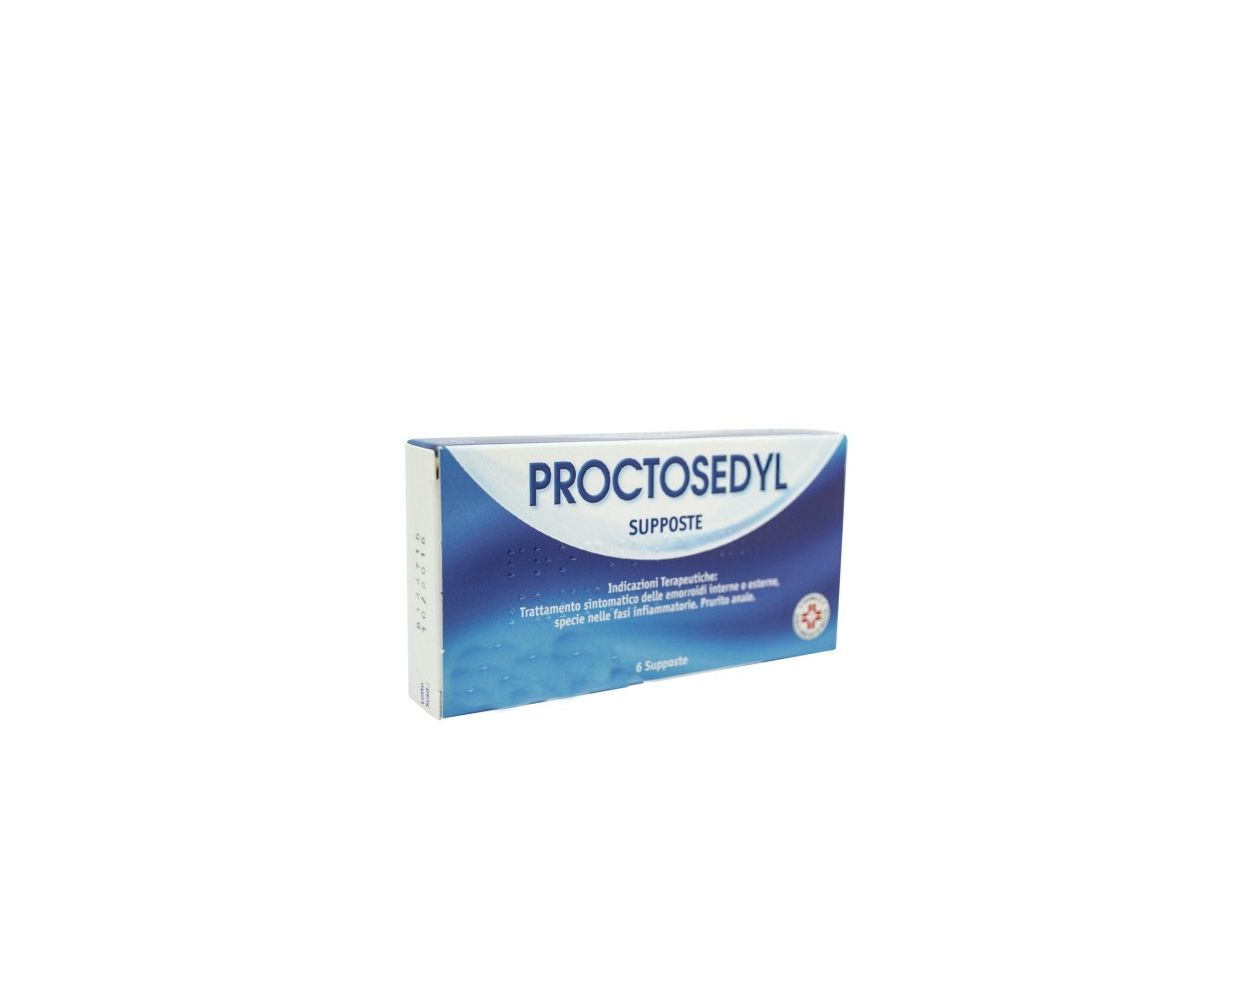 proctosedil pentru prostatită supozitoare pentru prostatită la bărbați